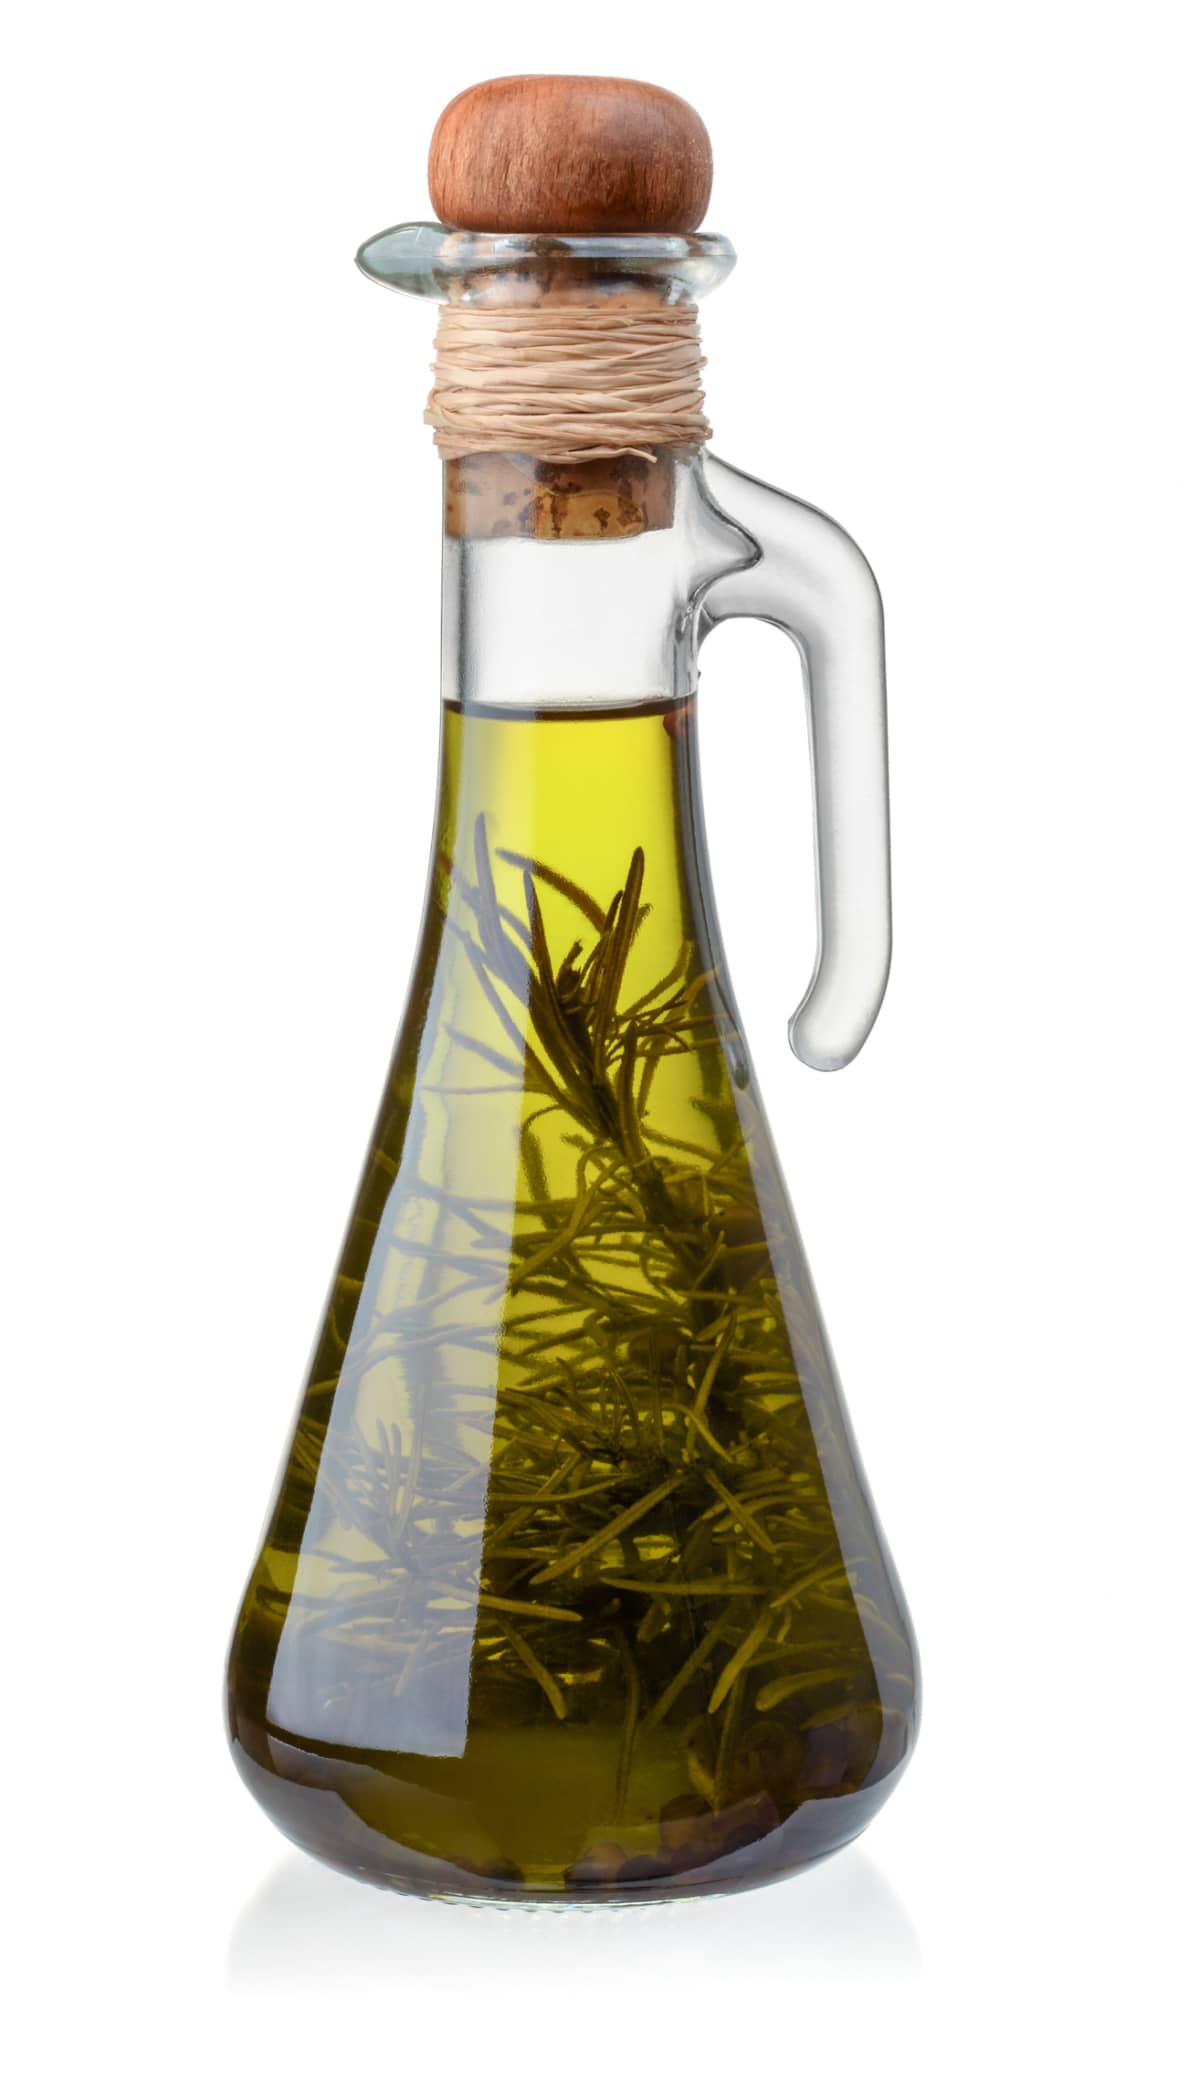 Bottle of vinegar with rosemary inside